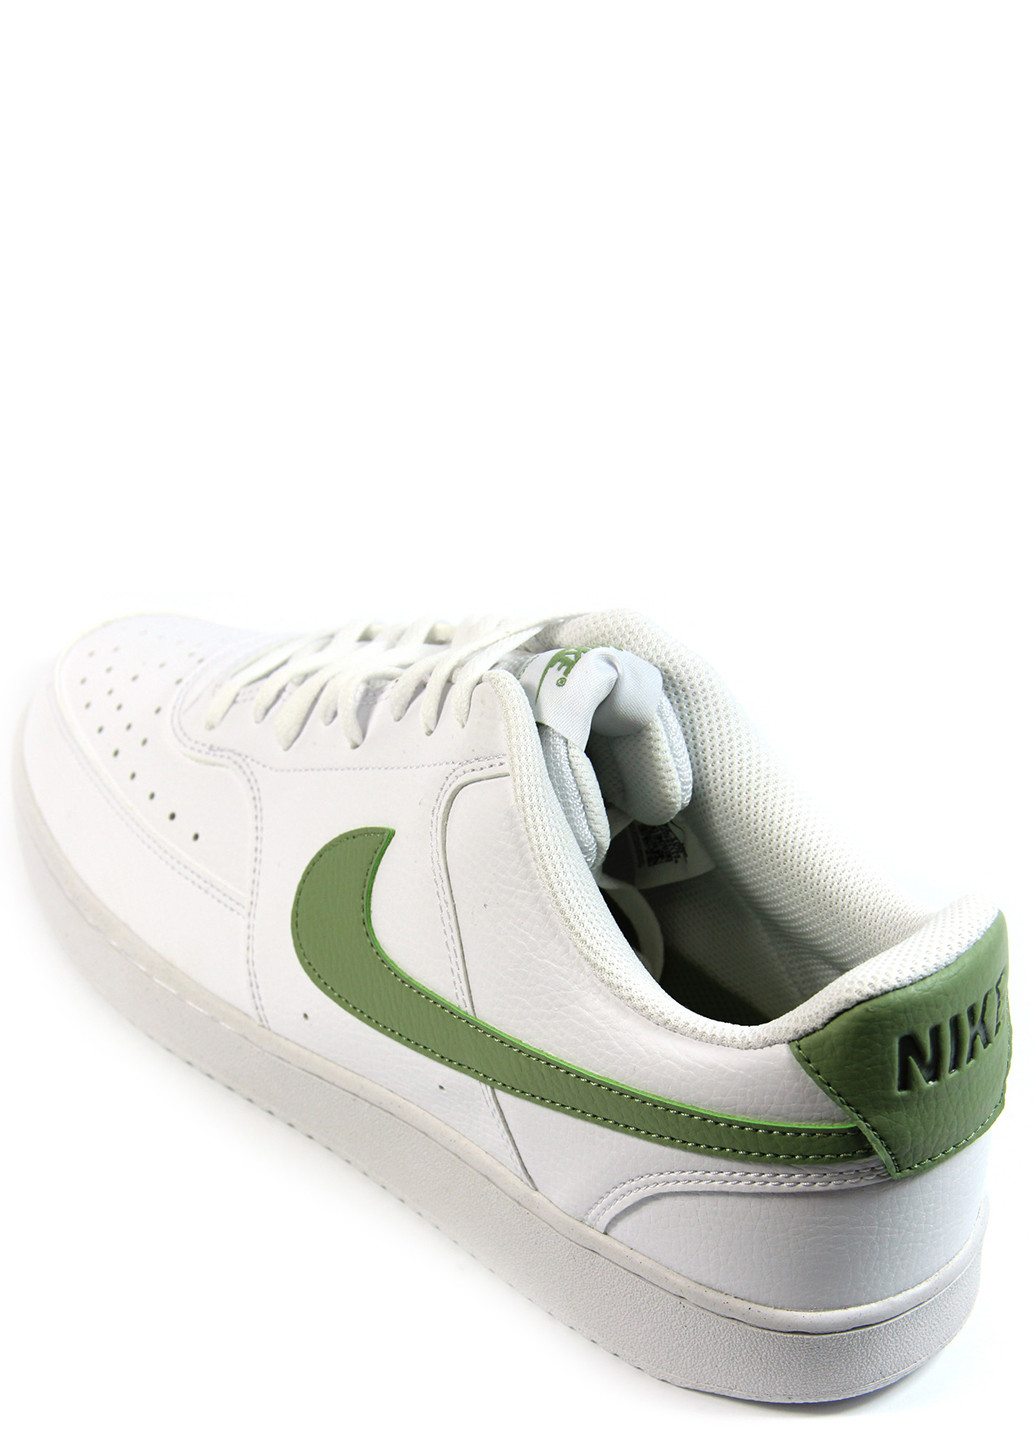 Білі Осінні чоловічі кросівки court vision low fd0781-100 Nike